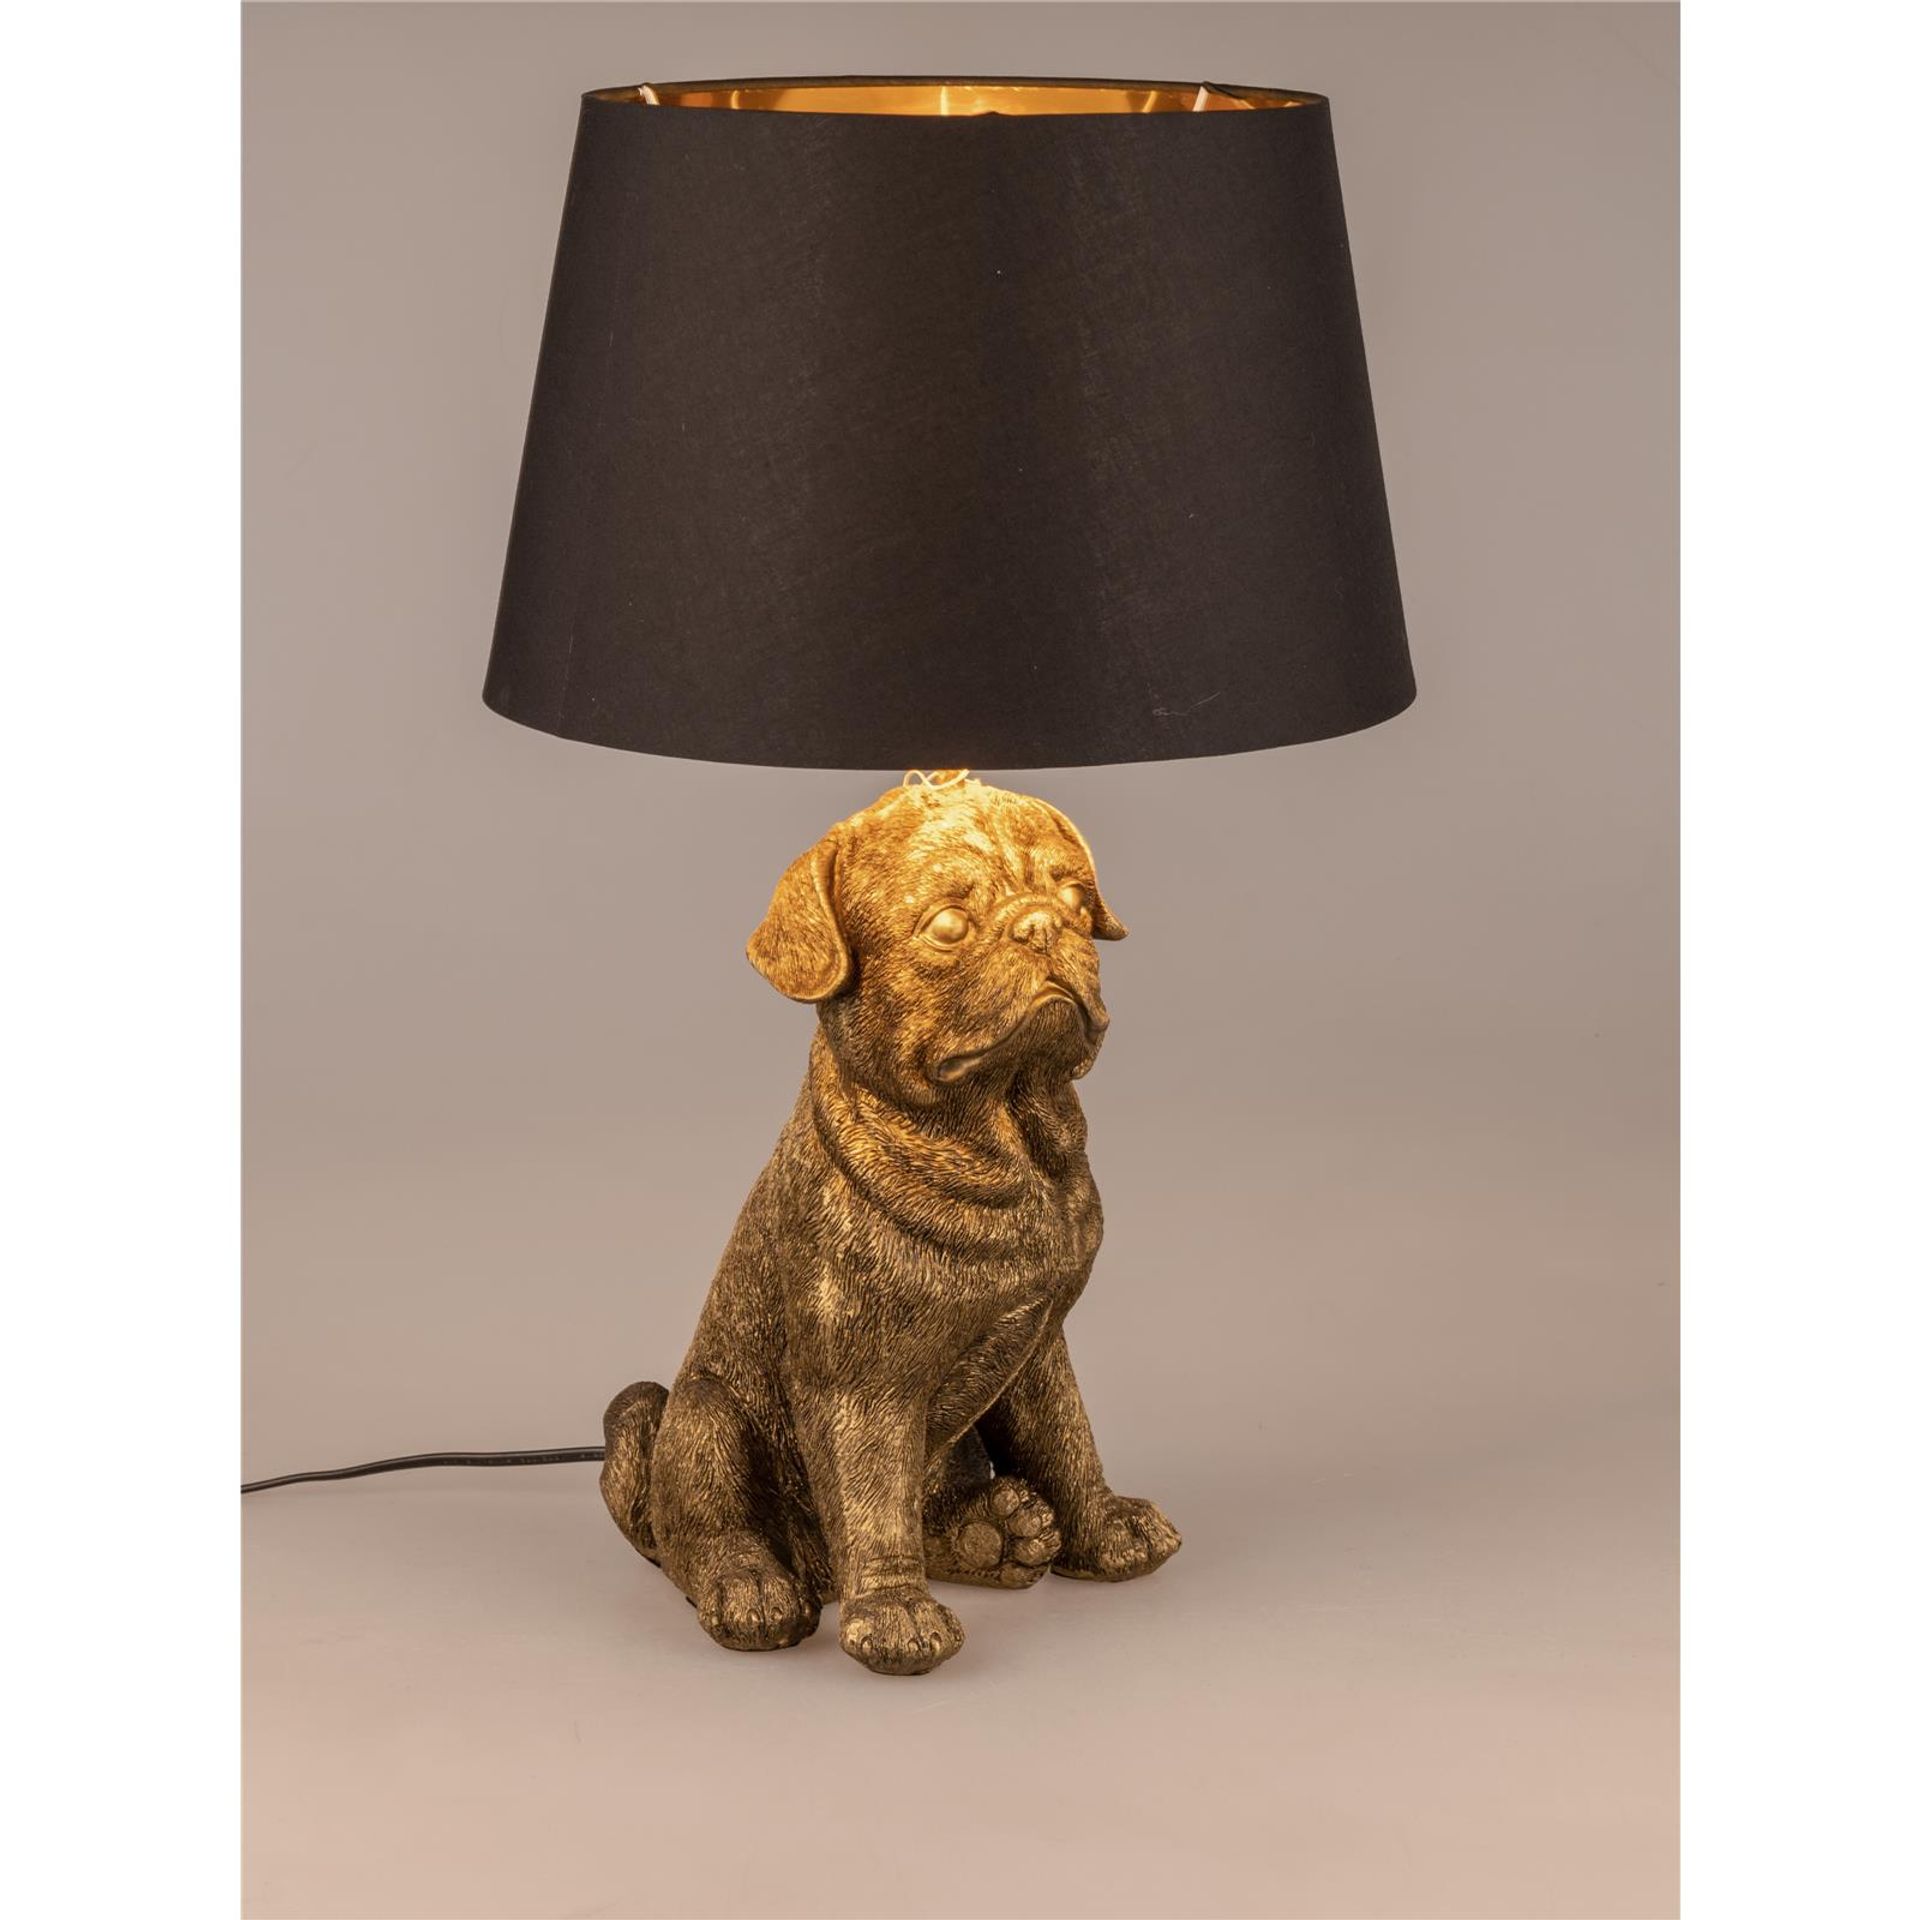 Sitzender Hund Lampe in Antik-Gold 52 cm x 36 cm, handgefertigte Deko-Lampe aus Kunststein mit schwarzem Stoffschirm